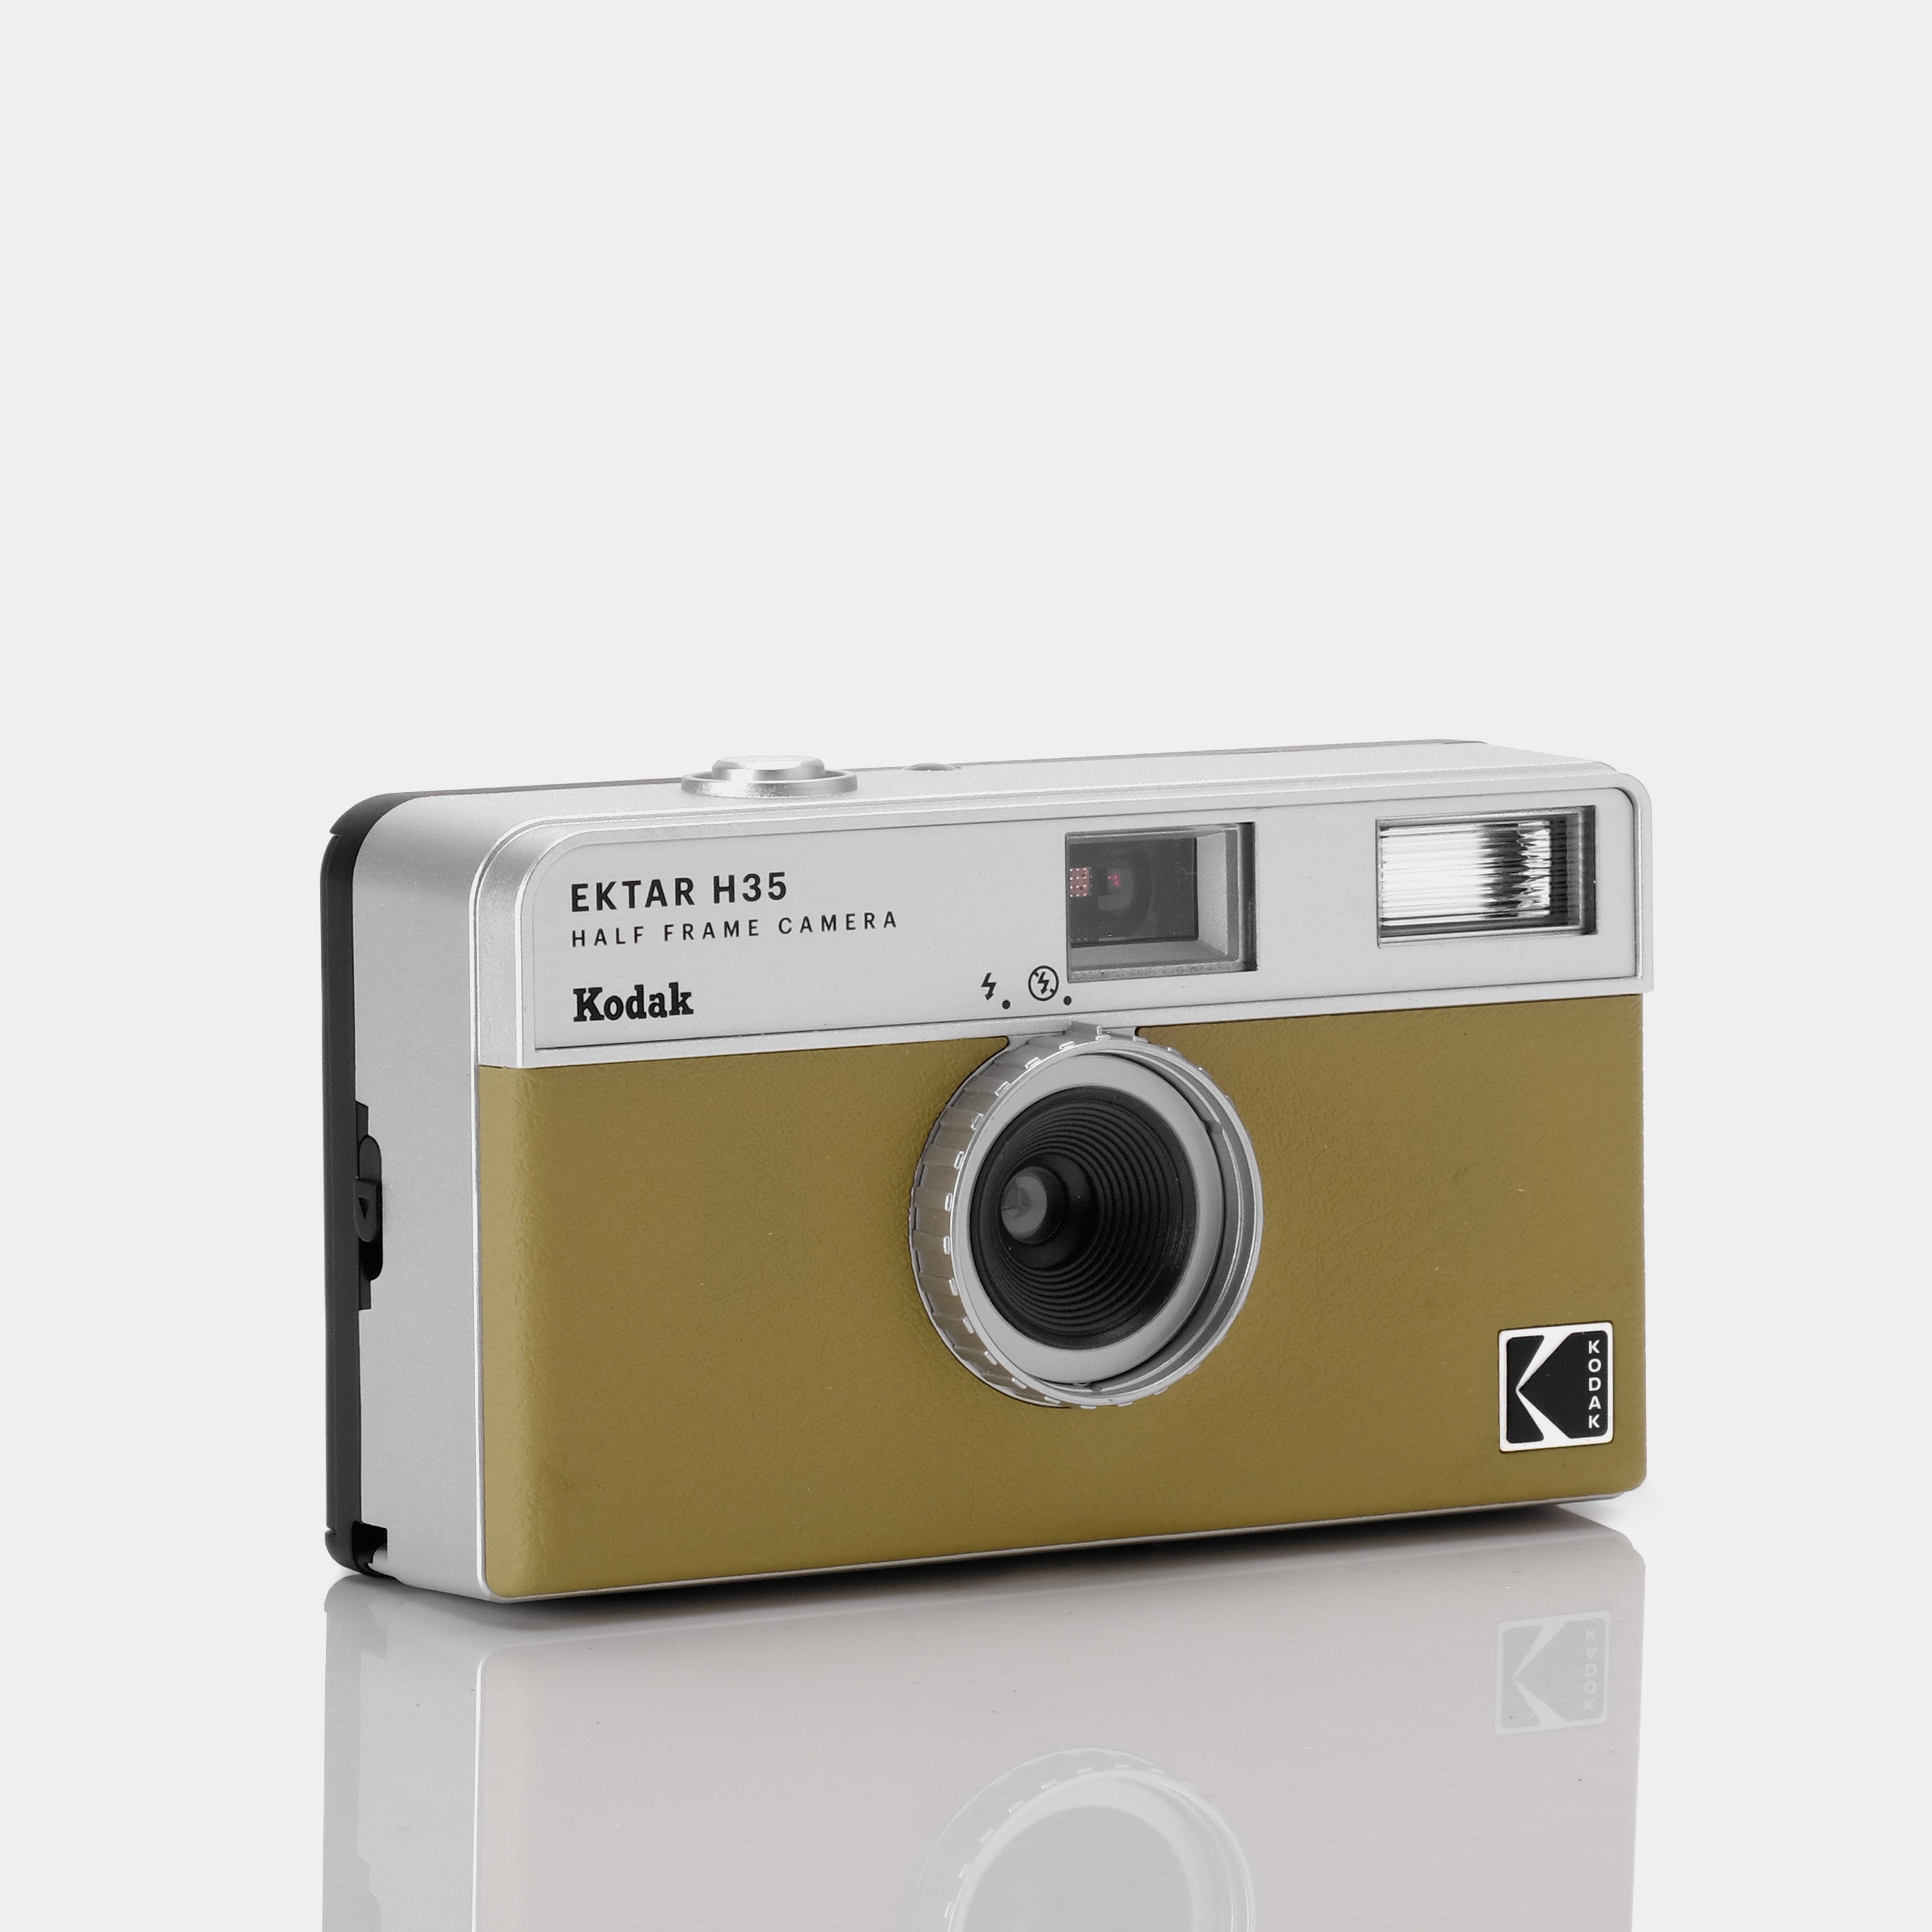 Kodak Ektar H35 35mm Half Frame Point and Shoot Film Camera - Sand